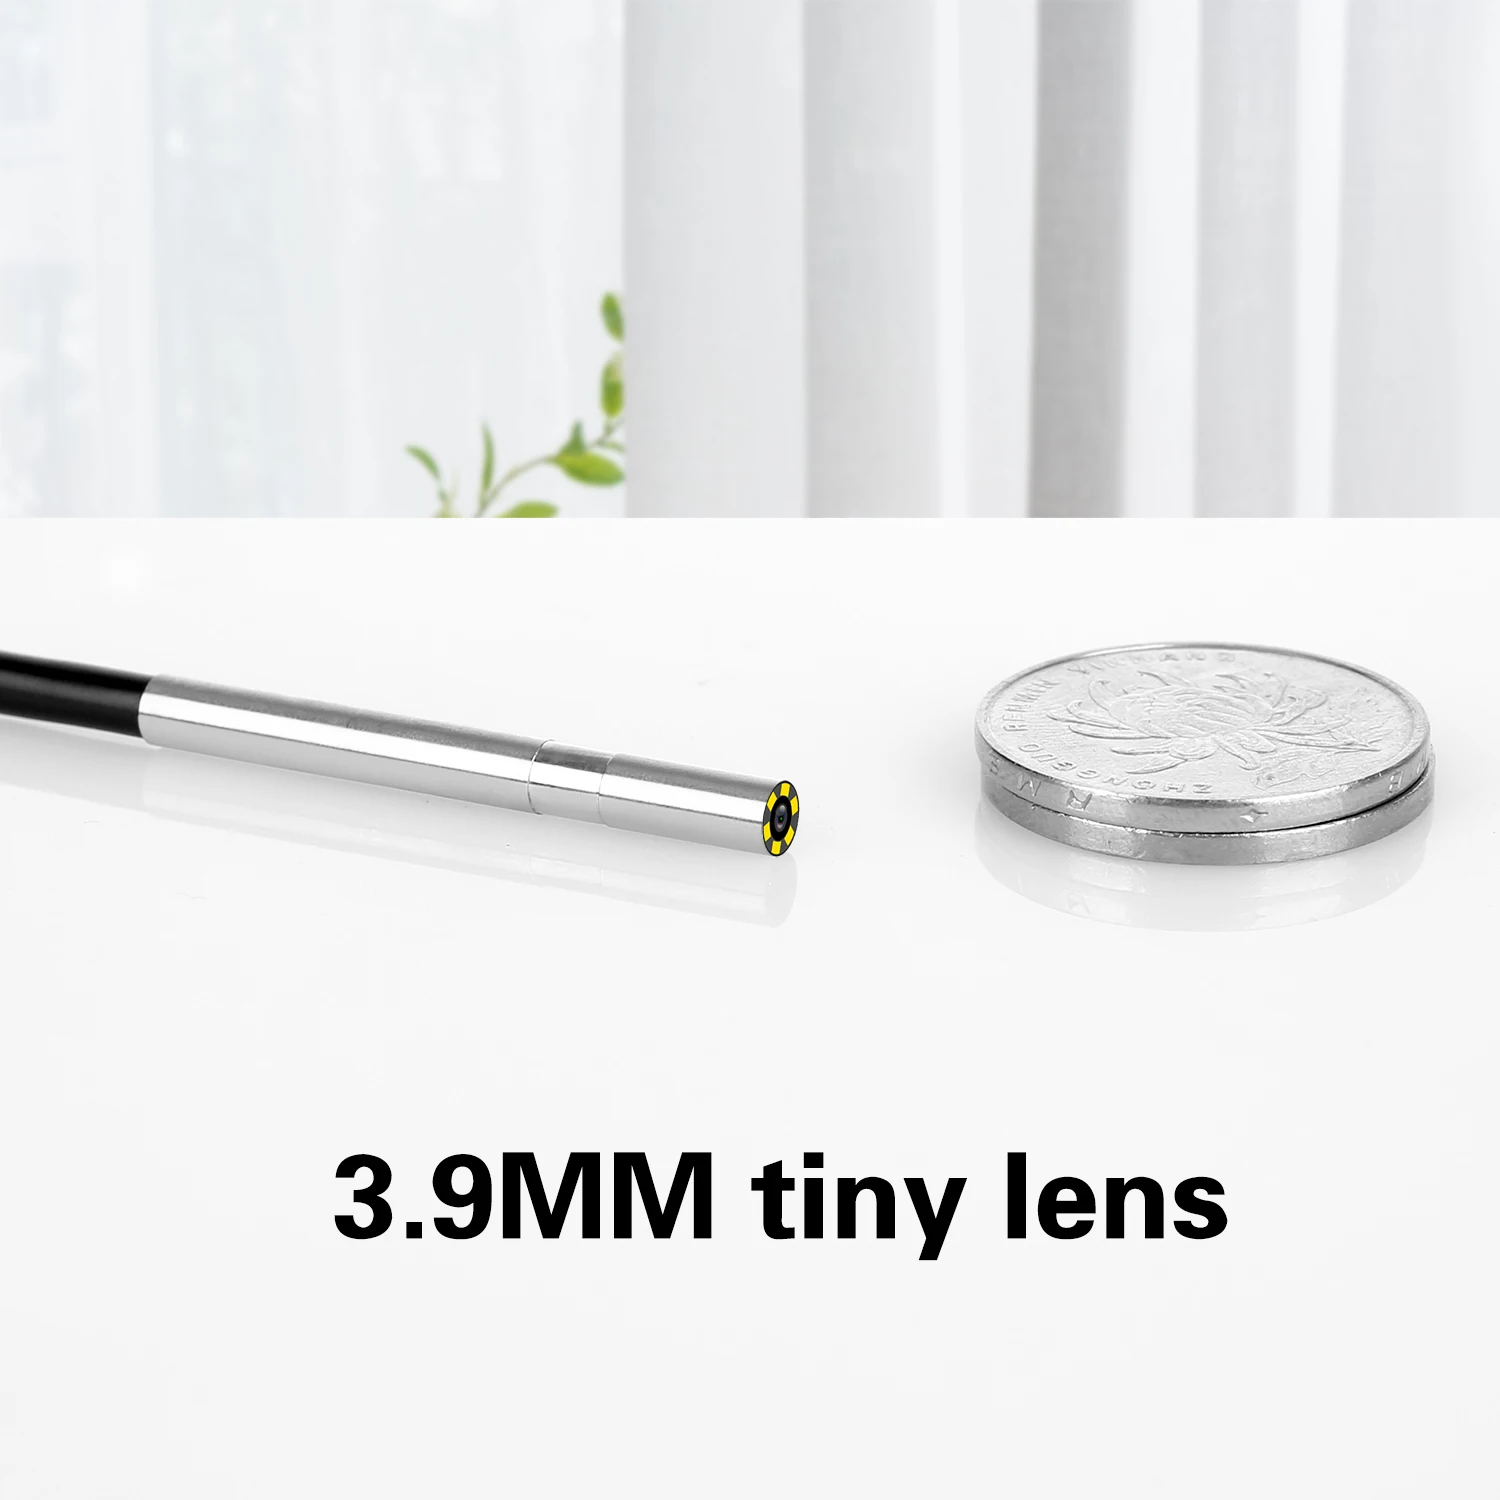 3 в 1 3,9 мм эндоскоп крошечные линзы мини андроид эндоскоп микро Гибкий Тип C водонепроницаемый осмотр для Android ПК бороскоп